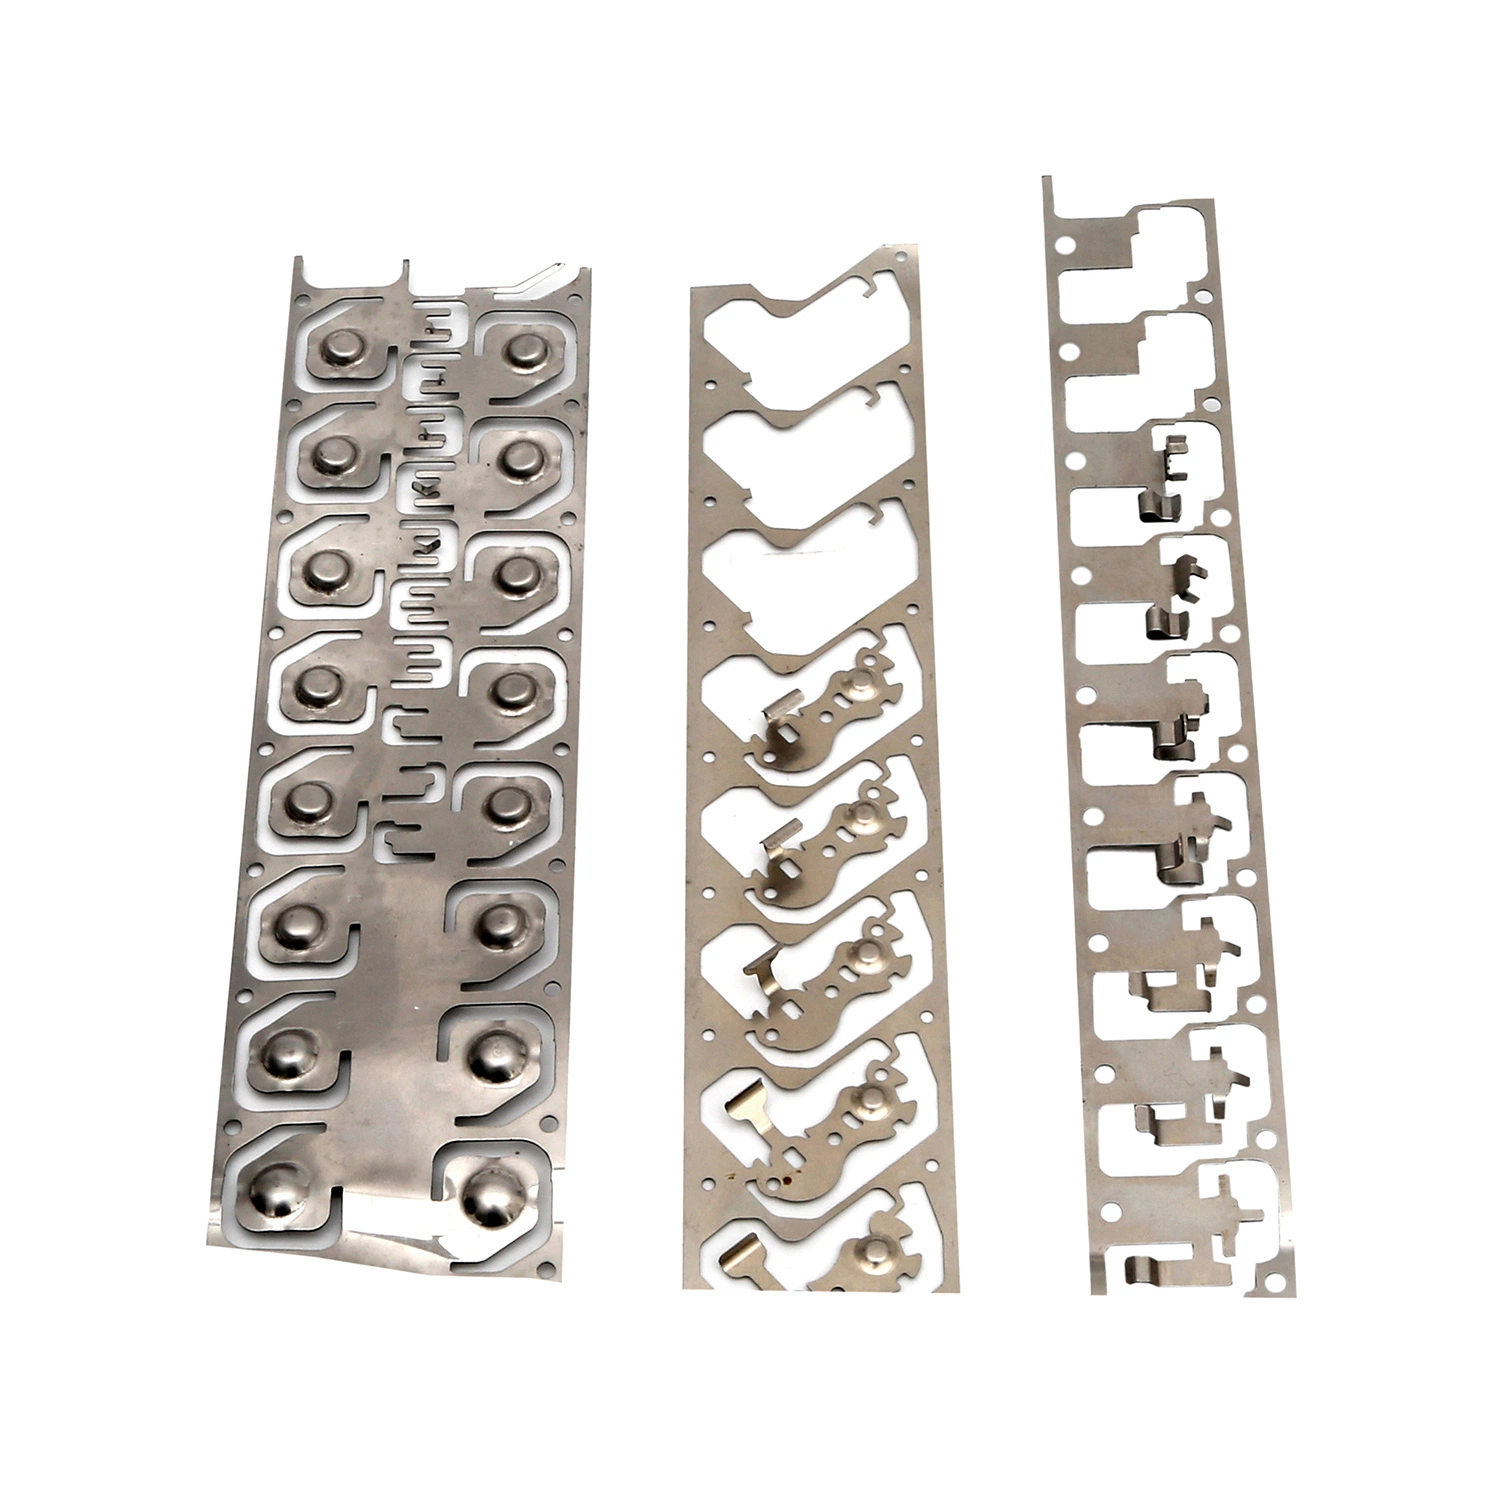 Précision progressive Fabrication de dessin profond CNC Matériel/acier inoxydable/laiton/pièces en tôle d'aluminium Estampage